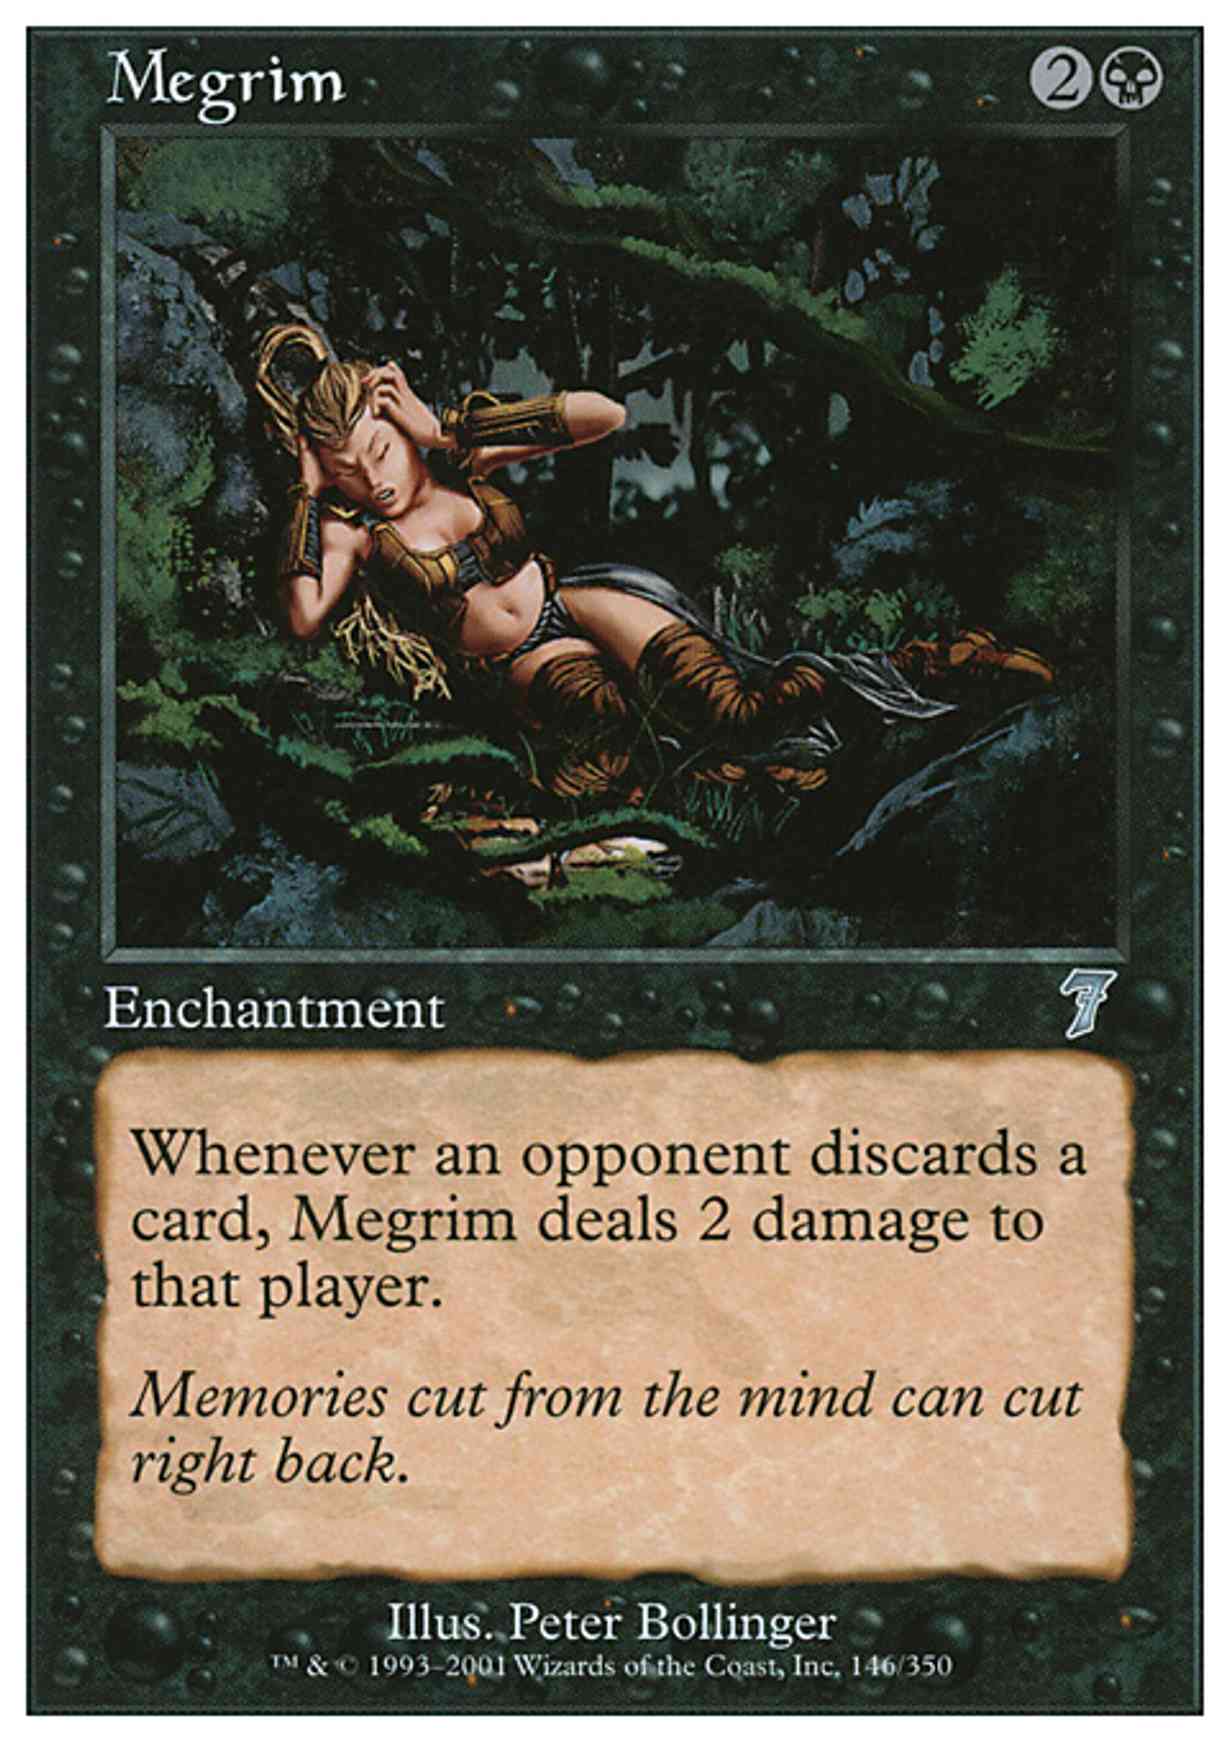 Megrim magic card front